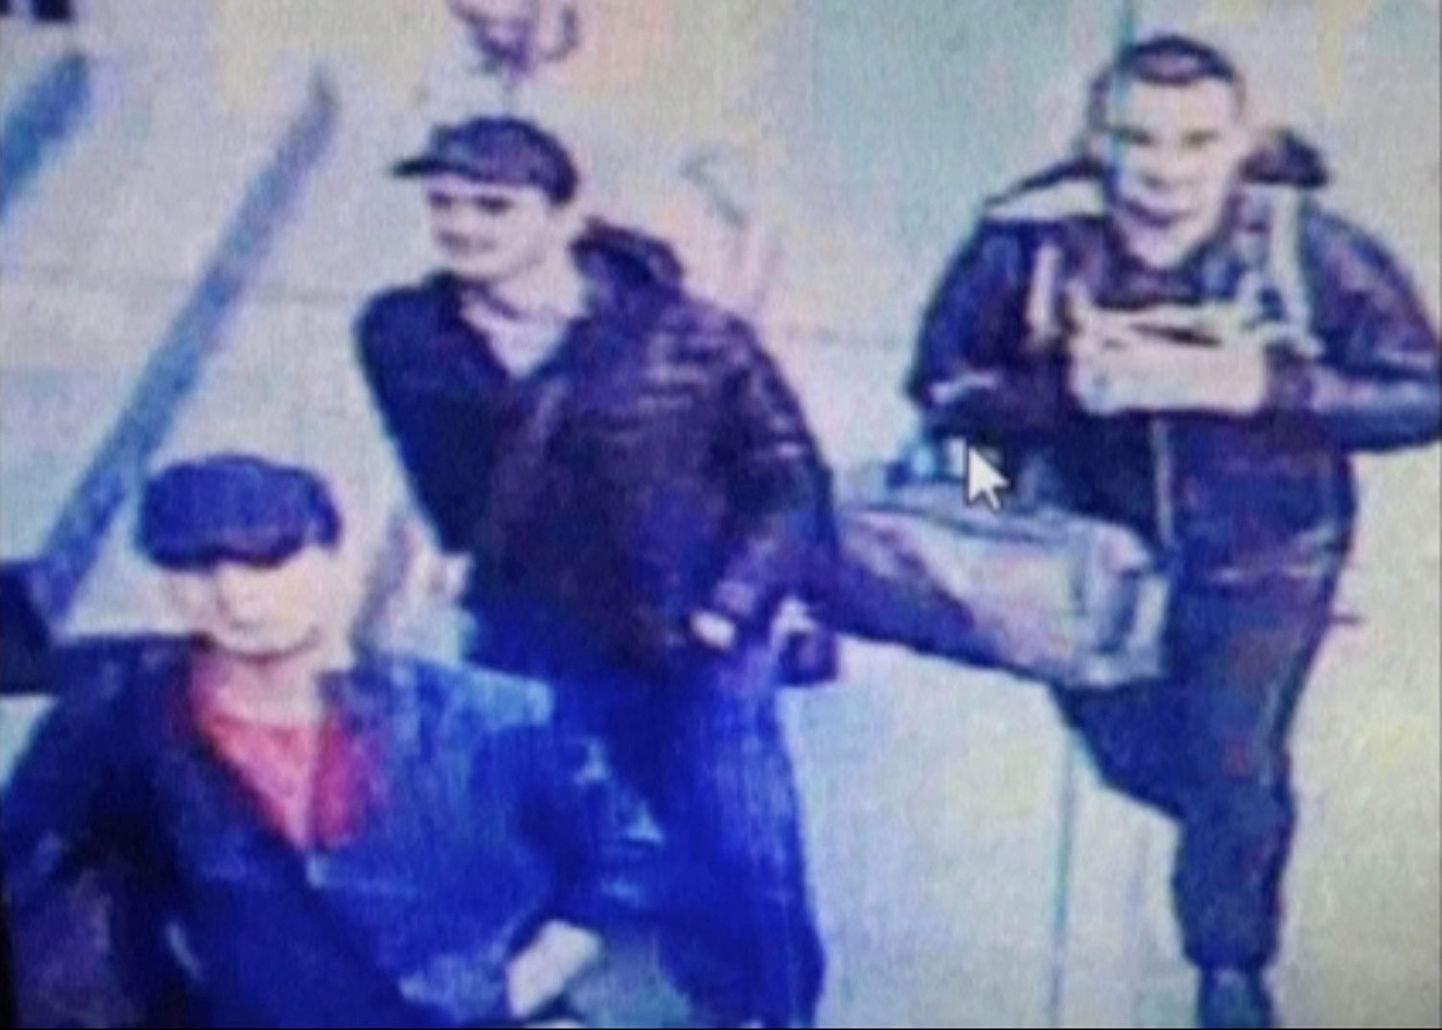 Videopilt kolmest mehest kõndimas Istanbuli rahvusvaheliste lendude terminalis. Neid kolme meest kahtlustatakse teisipäeval toime pandud Ataturki lennujaama terrorirünnaku toimepanemises.